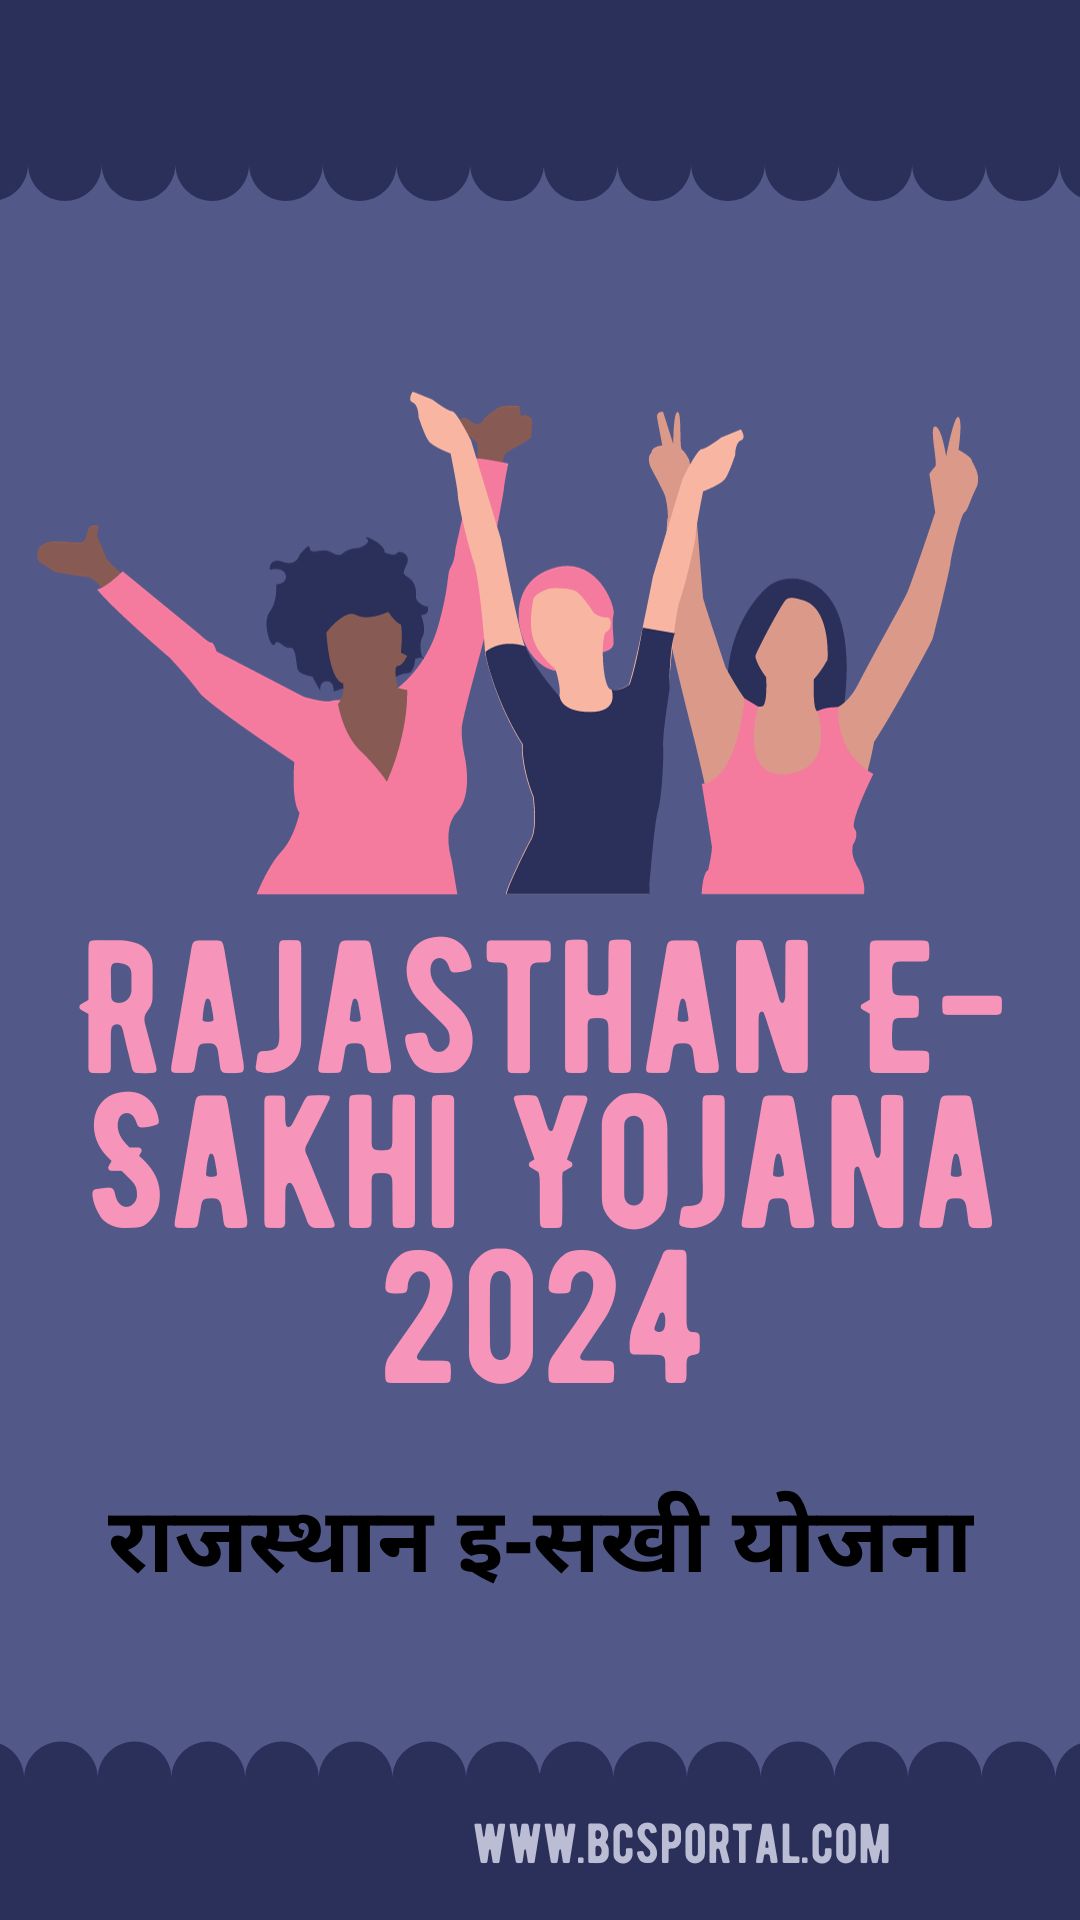 Rajasthan E-Sakhi Yojana 2024